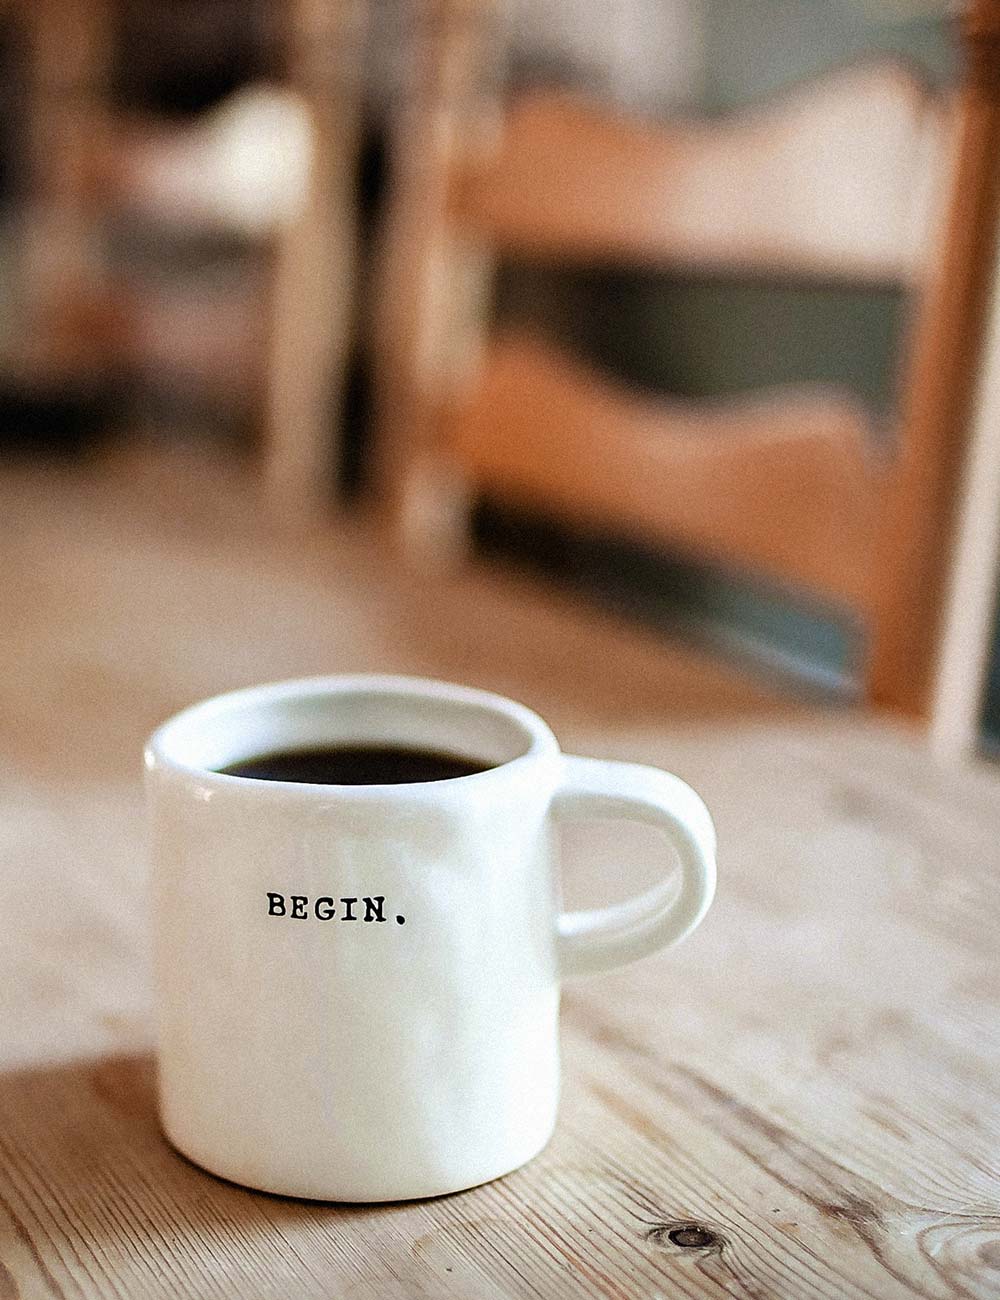 Eine Kaffeetasse mit einem Wort drauf. "BEGIN."